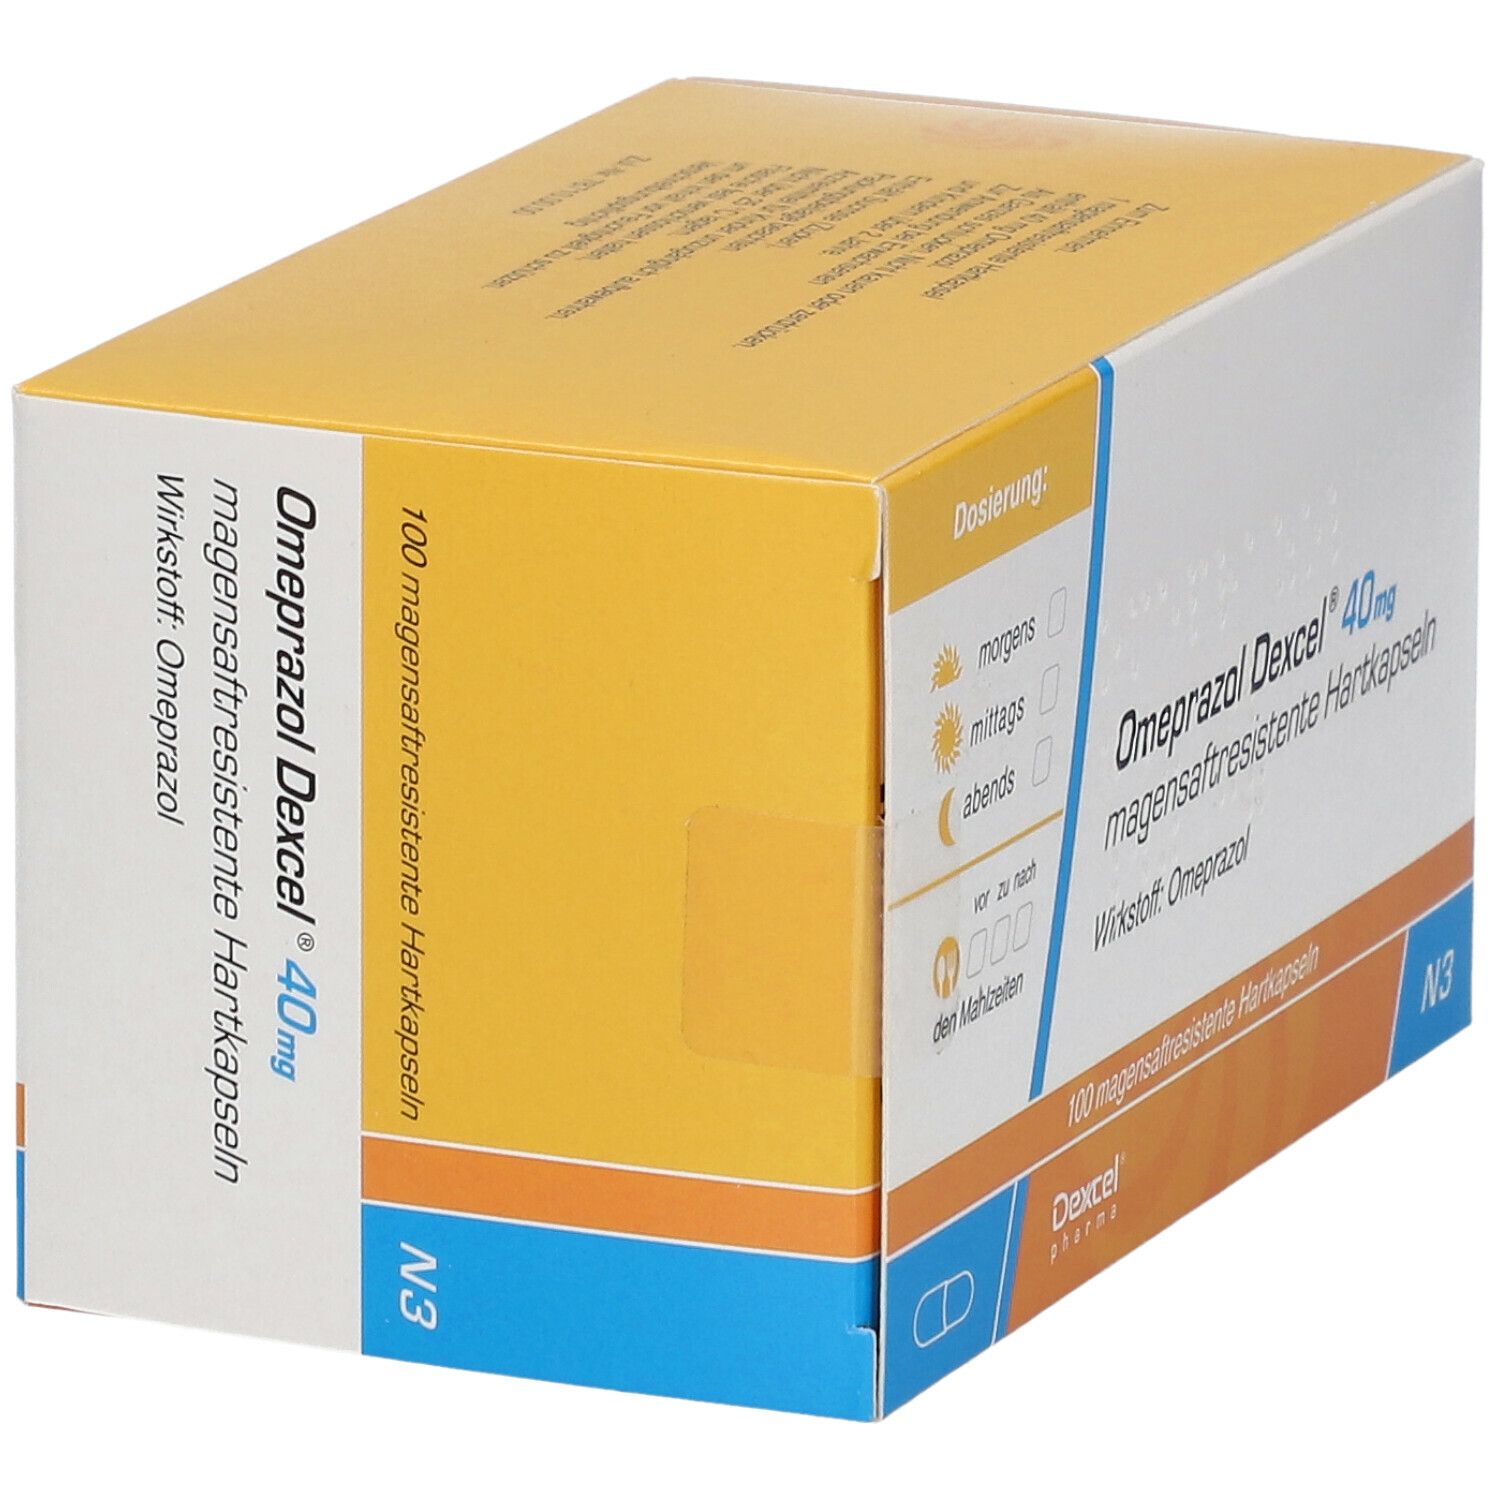 Omeprazol Dexcel® 40 mg